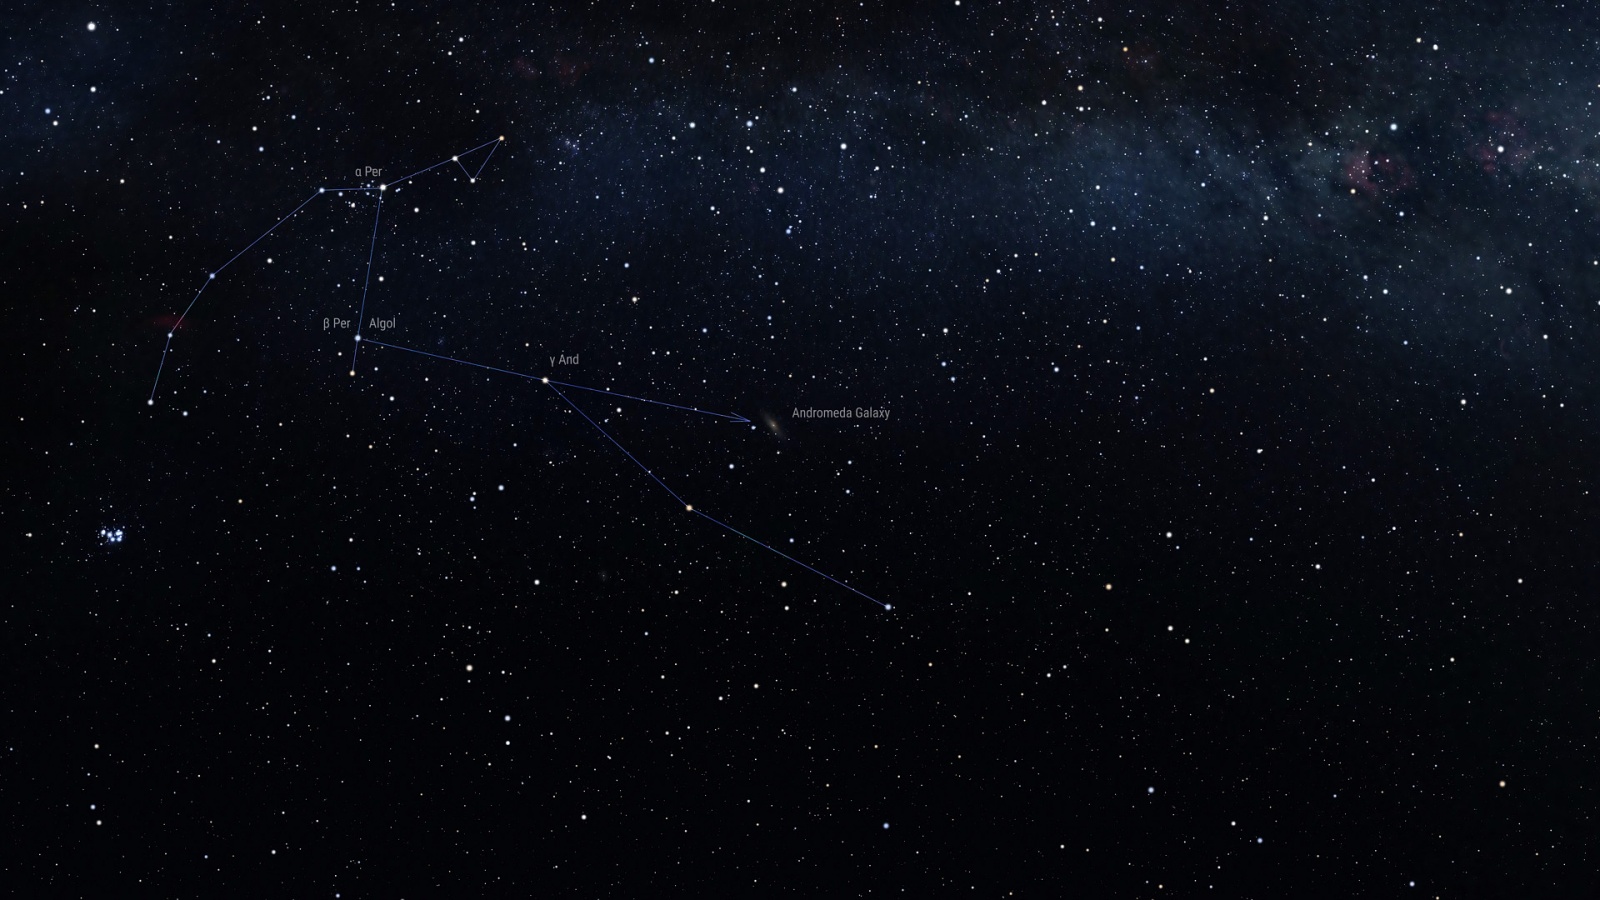 Способ отыскать на небе галактику Андромеды, опирающийся на звезды Алголь (Бета Персея) и Аламак (Гамма Андромеды)  